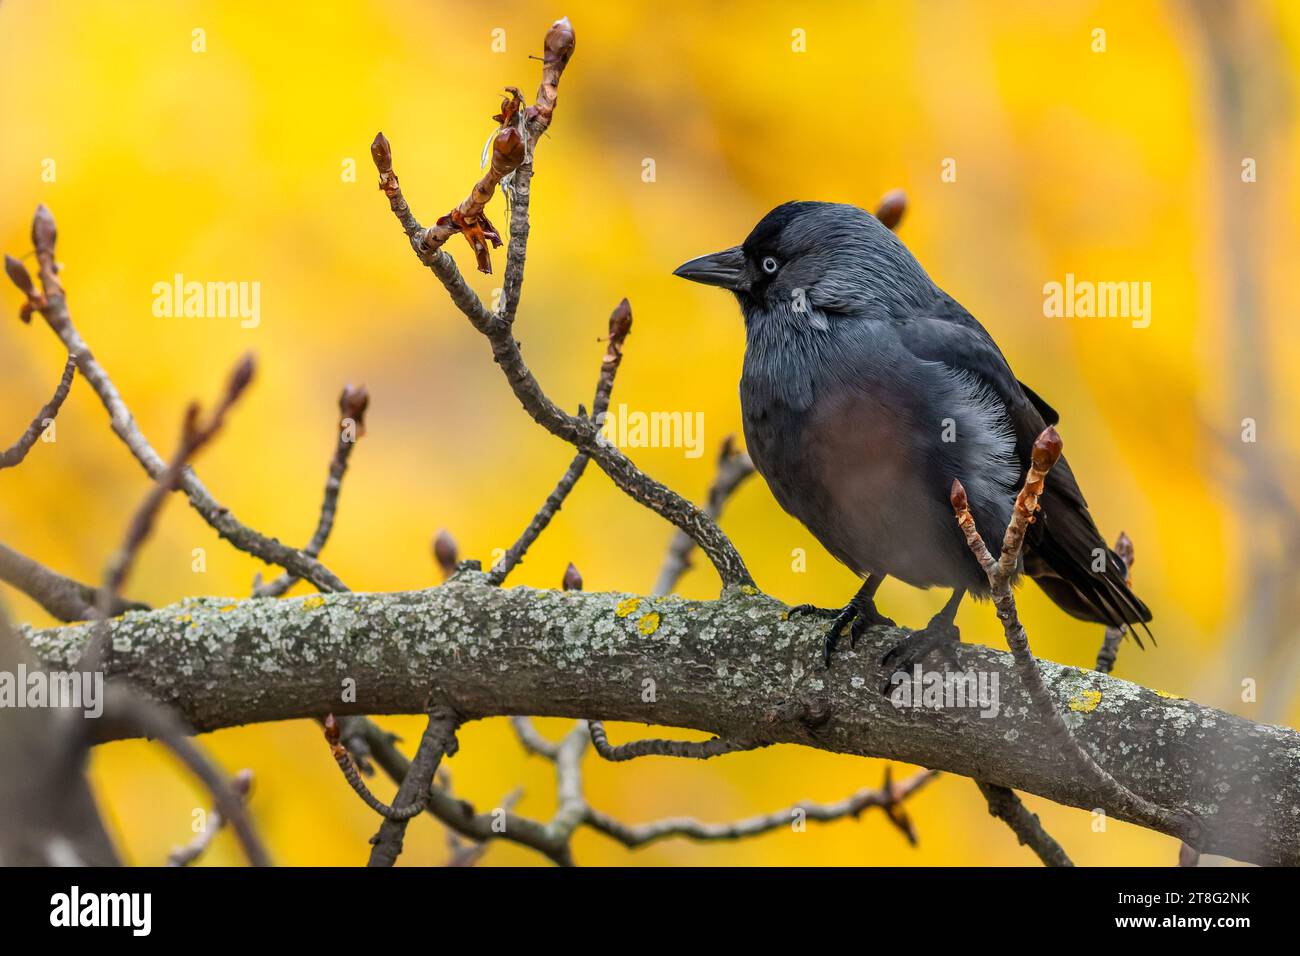 Le jackdaw eurasien, un oiseau noir et gris aux yeux bleus, perché sur une branche avec de petites brindilles. Fond jaune et orange. Colo d'automne coloré Banque D'Images